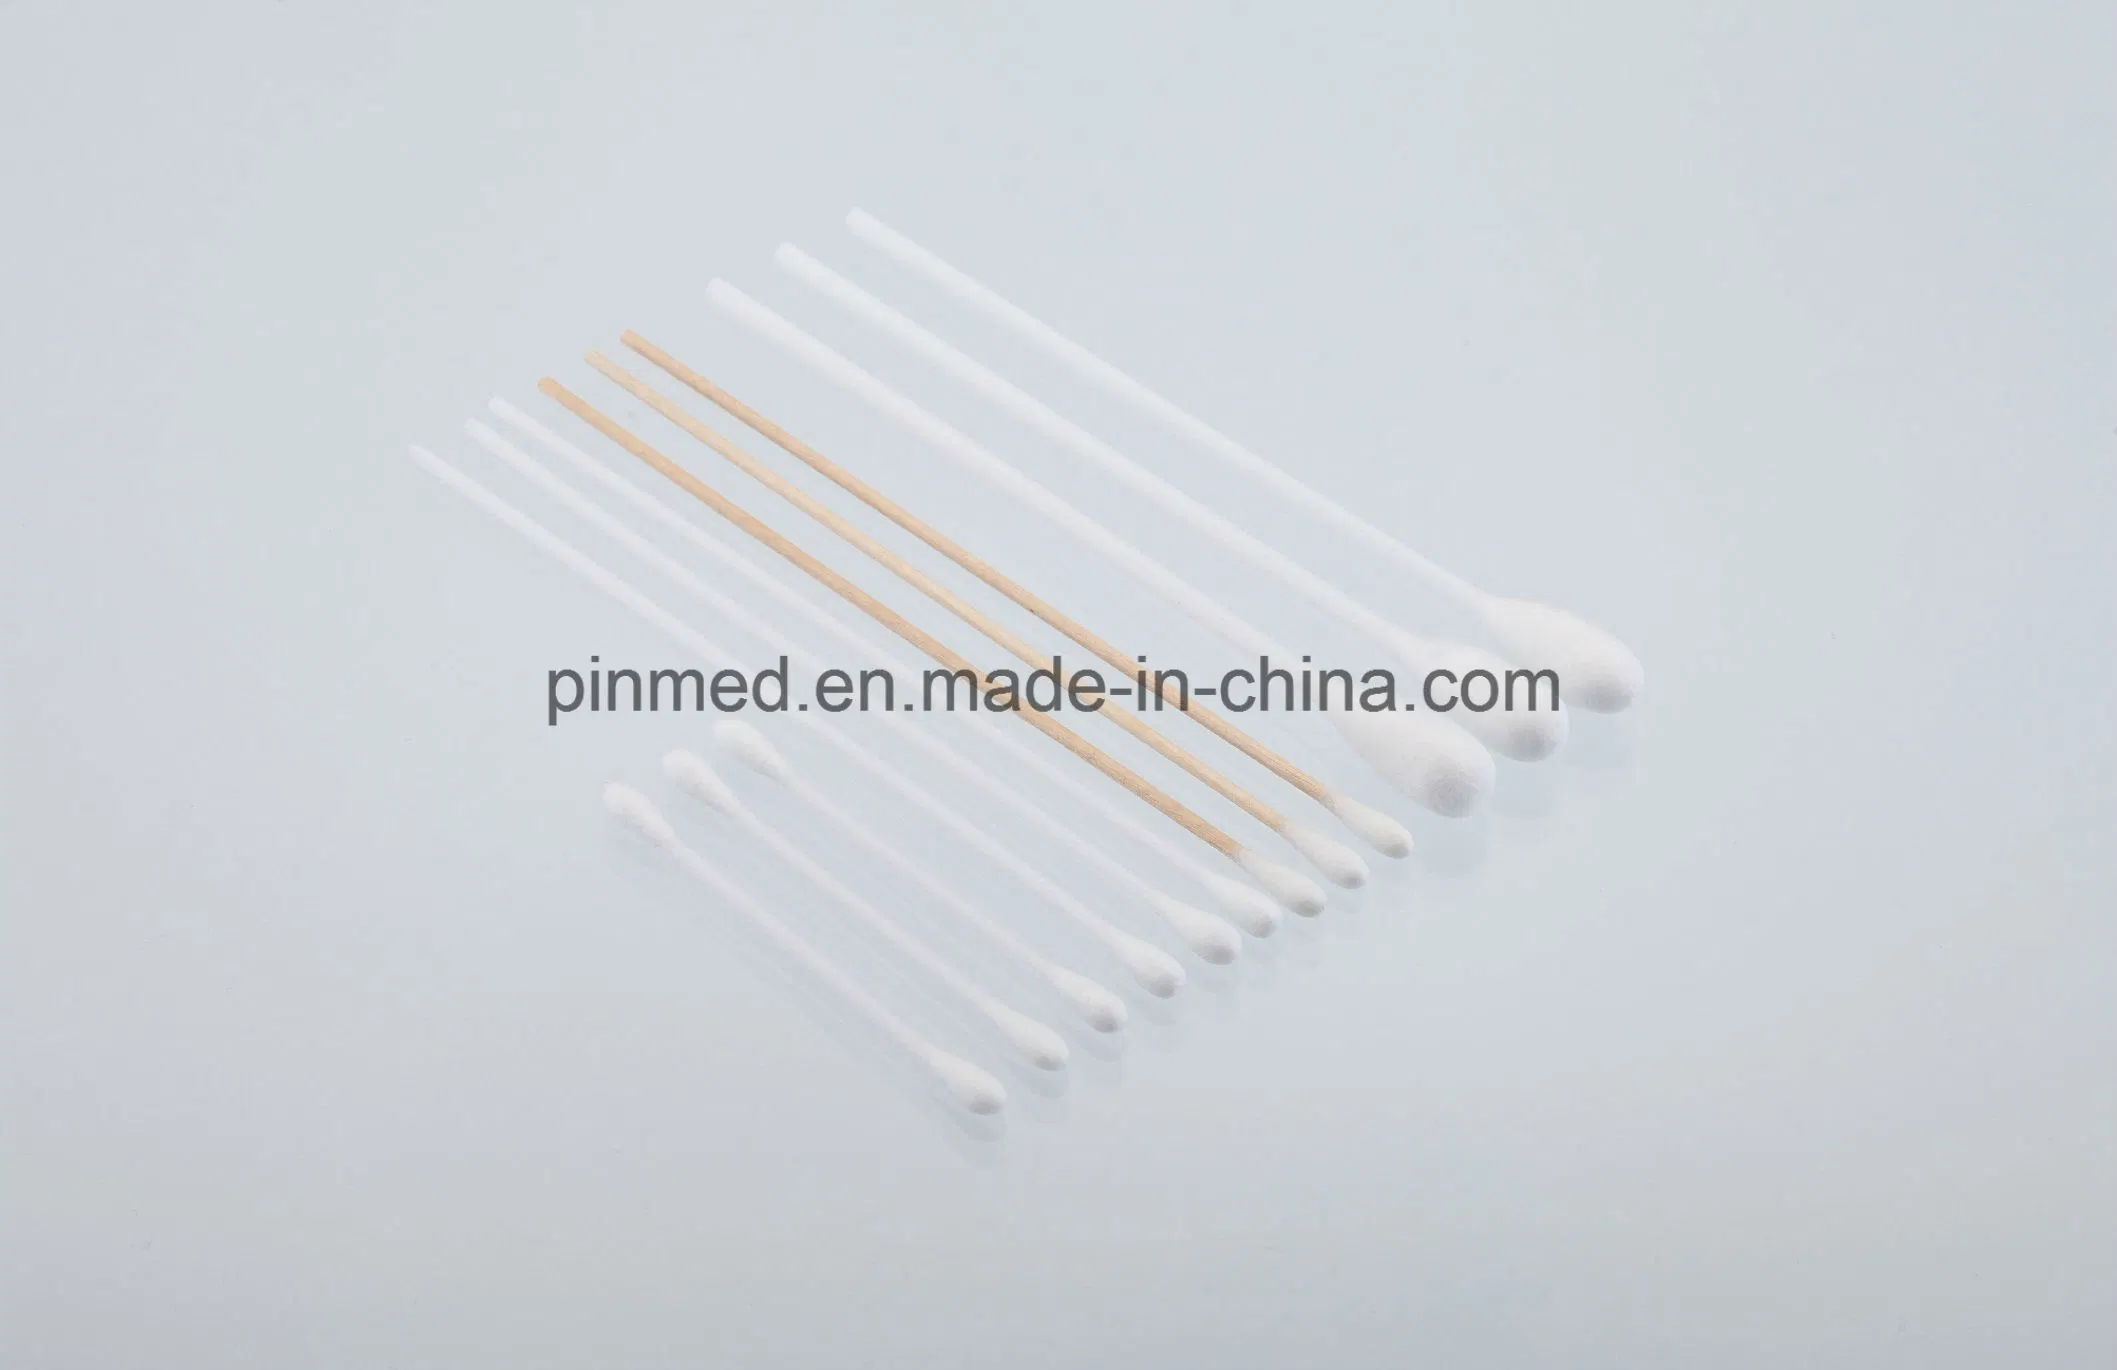 Disposable Cotton Tip Applicators, Plastic Stick